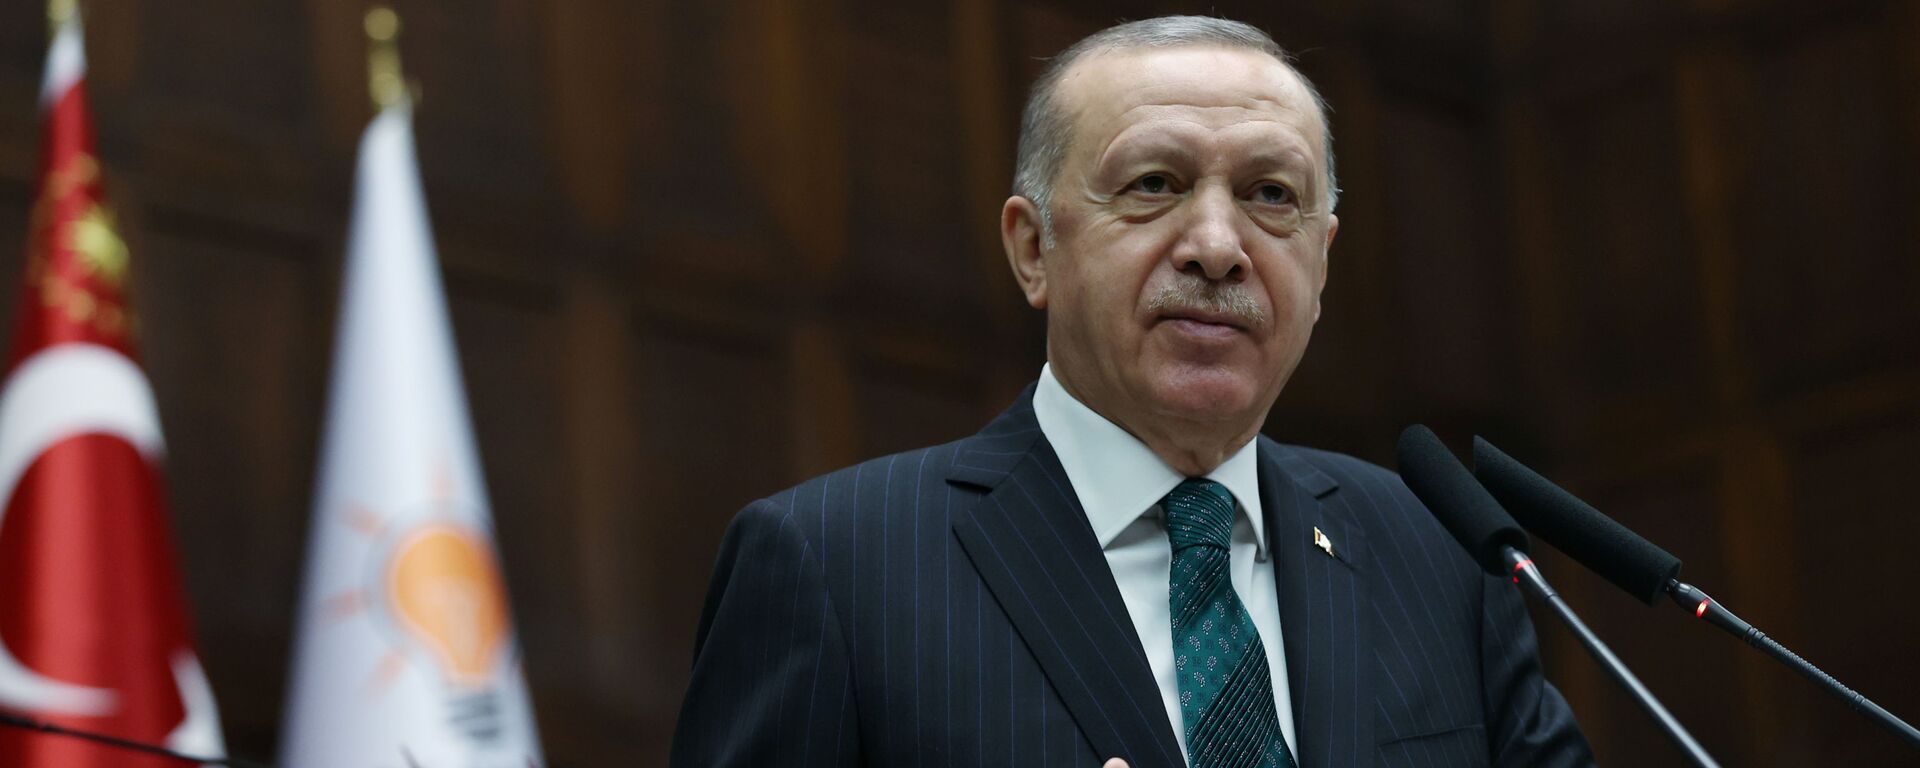 Recep Tayyip Erdogan, presidente de Turquía  - Sputnik Mundo, 1920, 19.10.2021